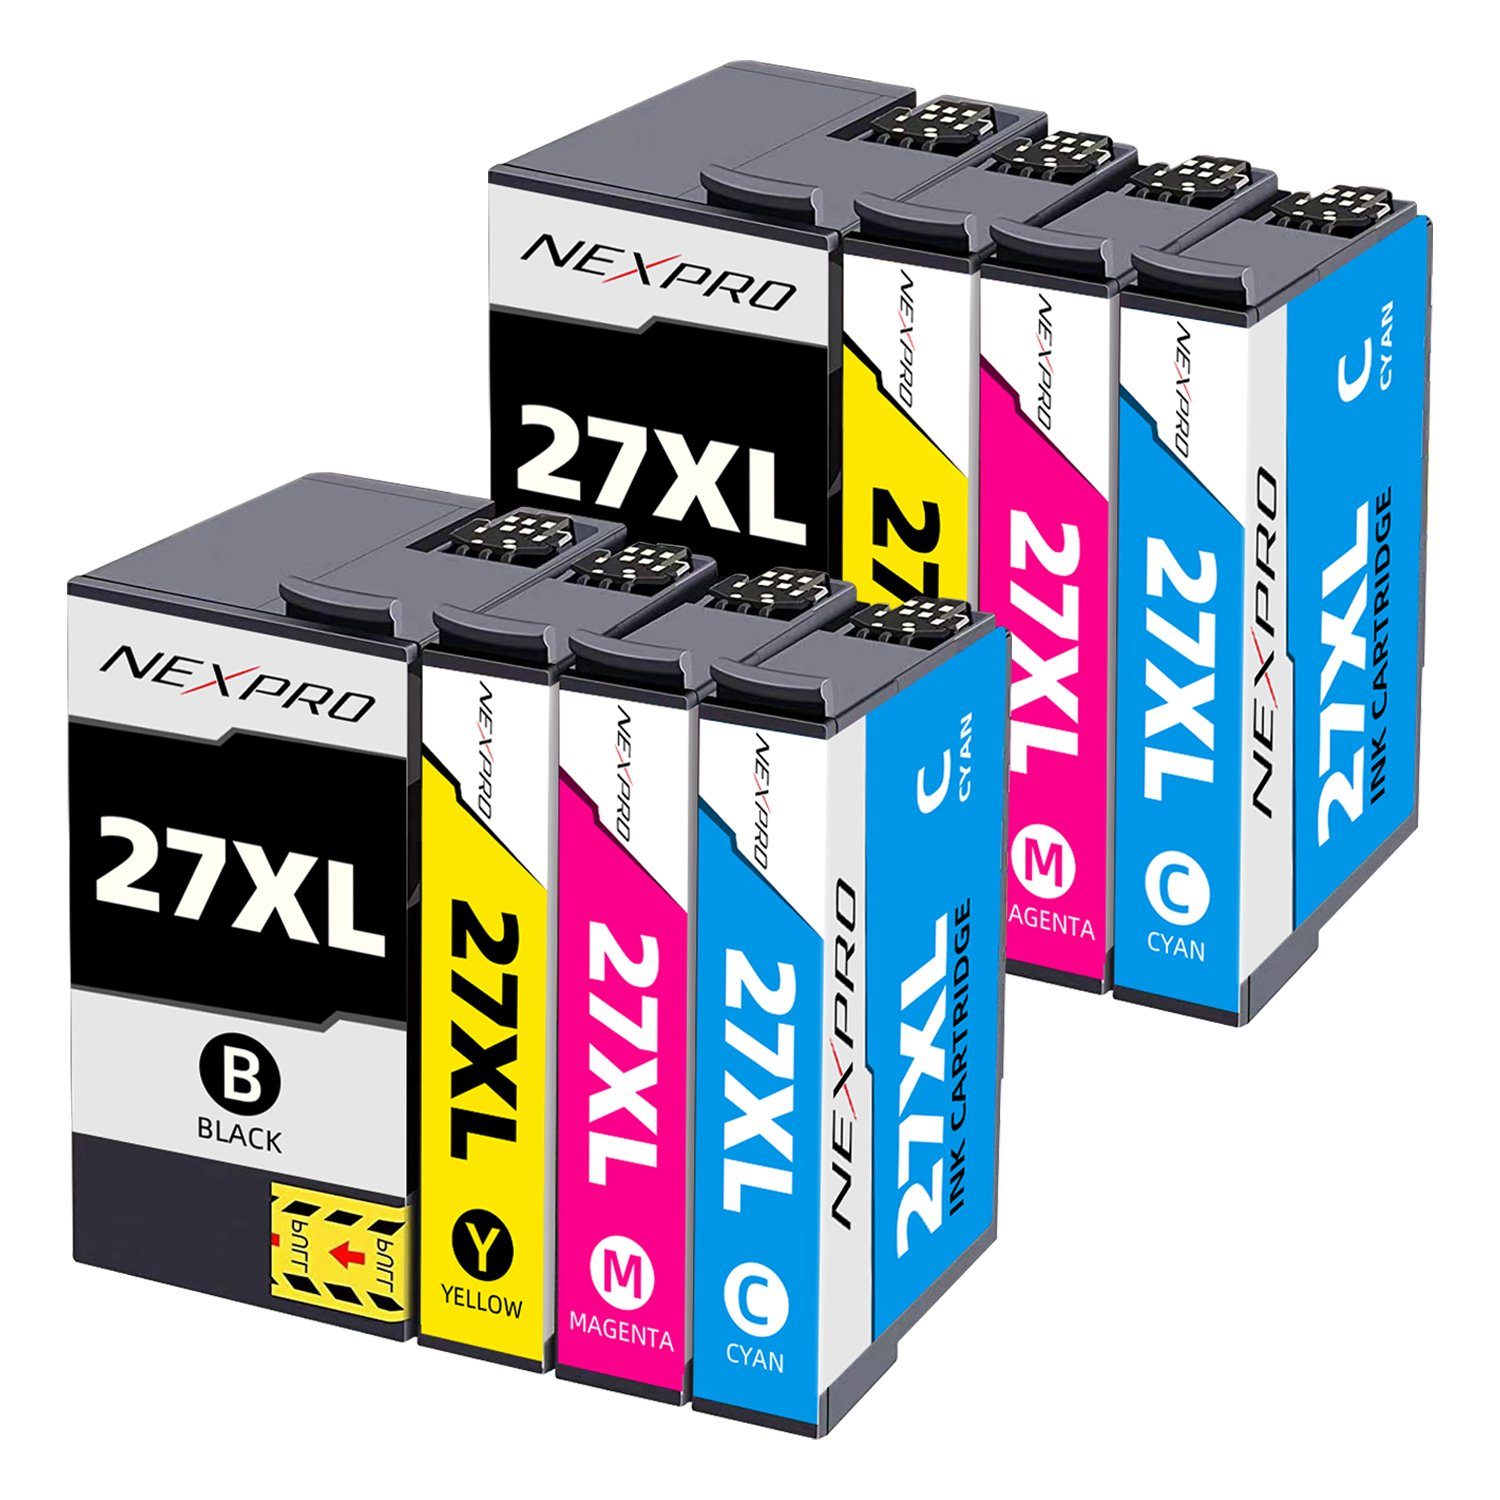 27 schwarz/ Multipack NEXPRO Epson Druckerpatronen magenta/cyan/yellow) für 27 WF7110DTW, XL WF3640DTWF 8er Druckerpatronen XL Epson (Packung, WF3620DWF Tintenpatrone